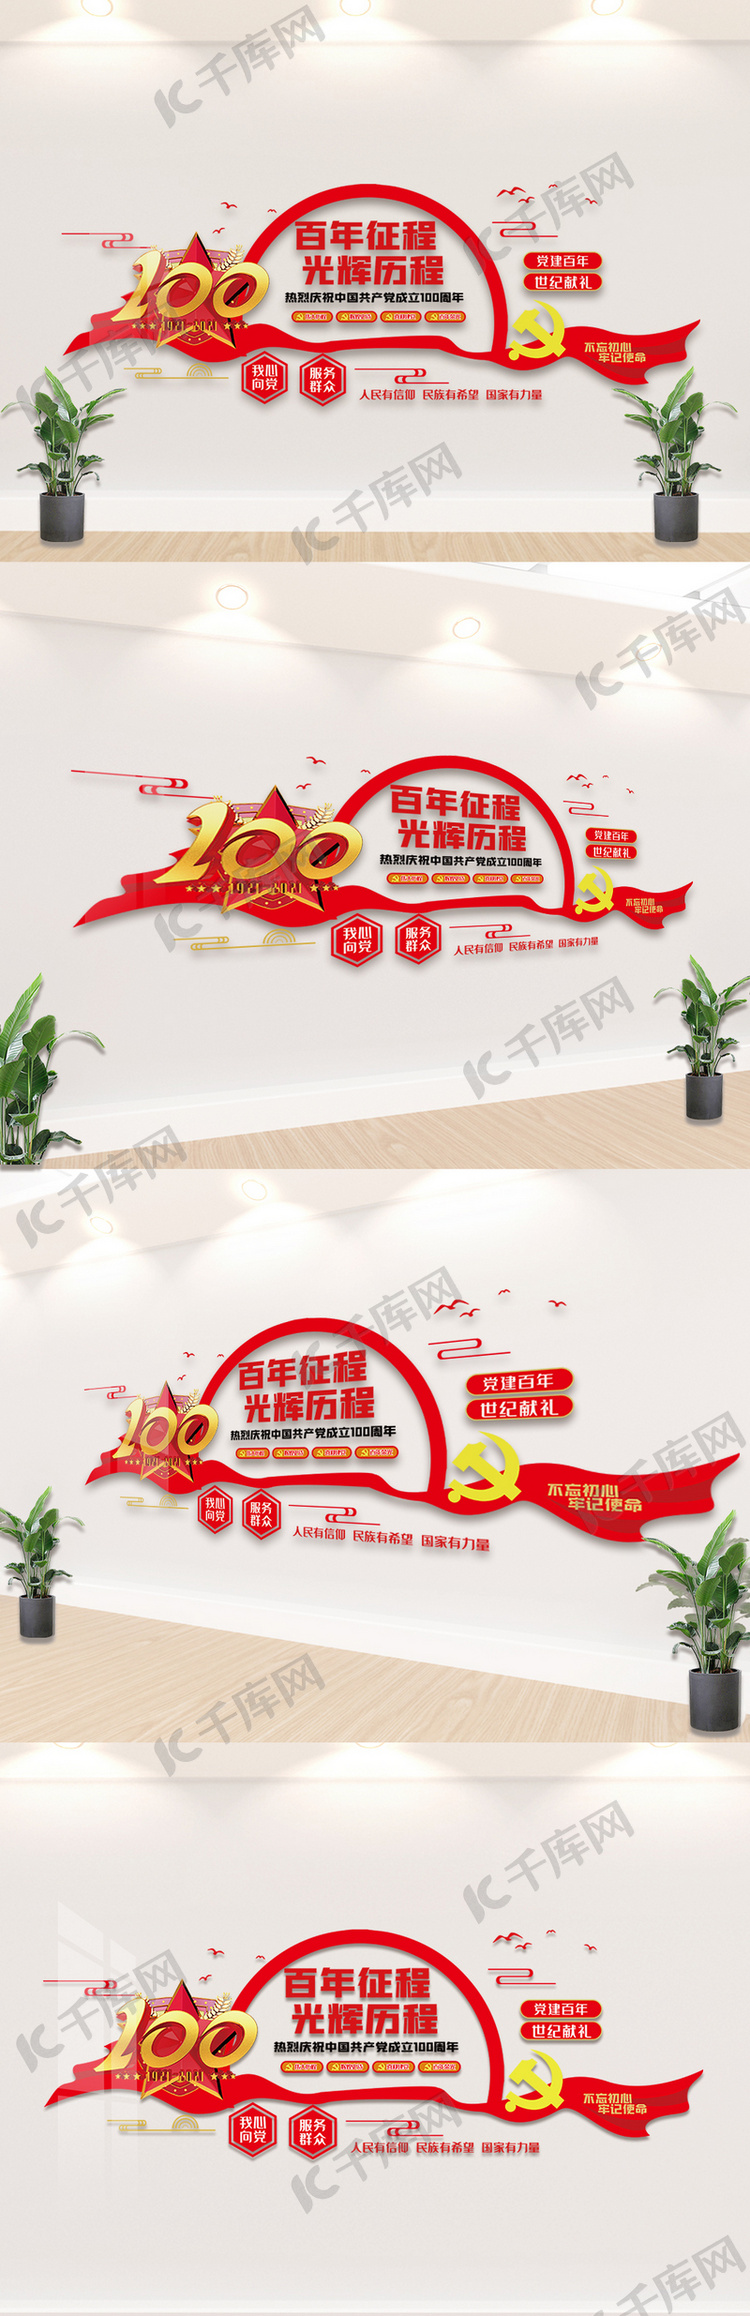 中国共产党建党100周年内容文化墙设计